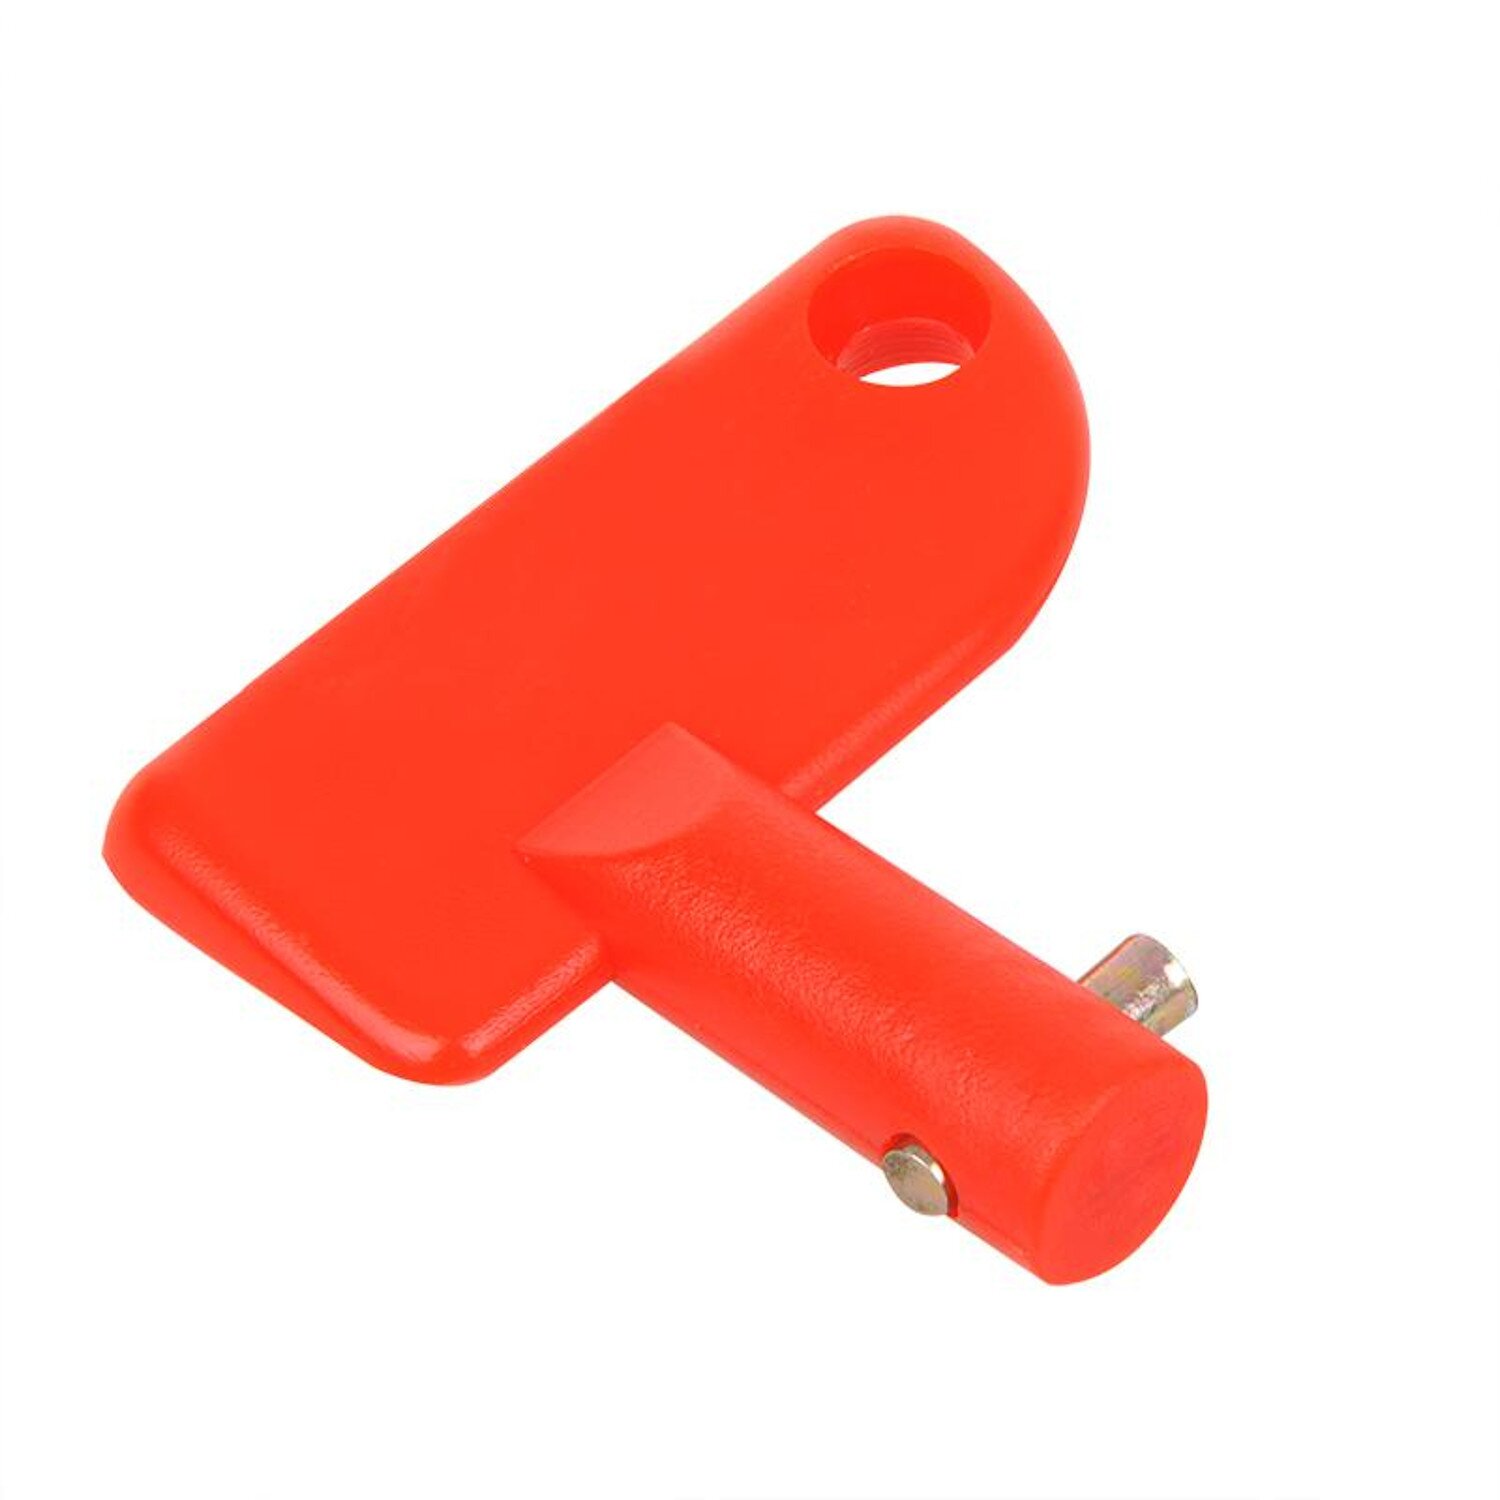 https://www.preiswert-gut.com/media/image/product/4739/lg/schluessel-batteriehauptschalter-orange-trennschalter-stromschalter-ein-aus-bwi.jpg